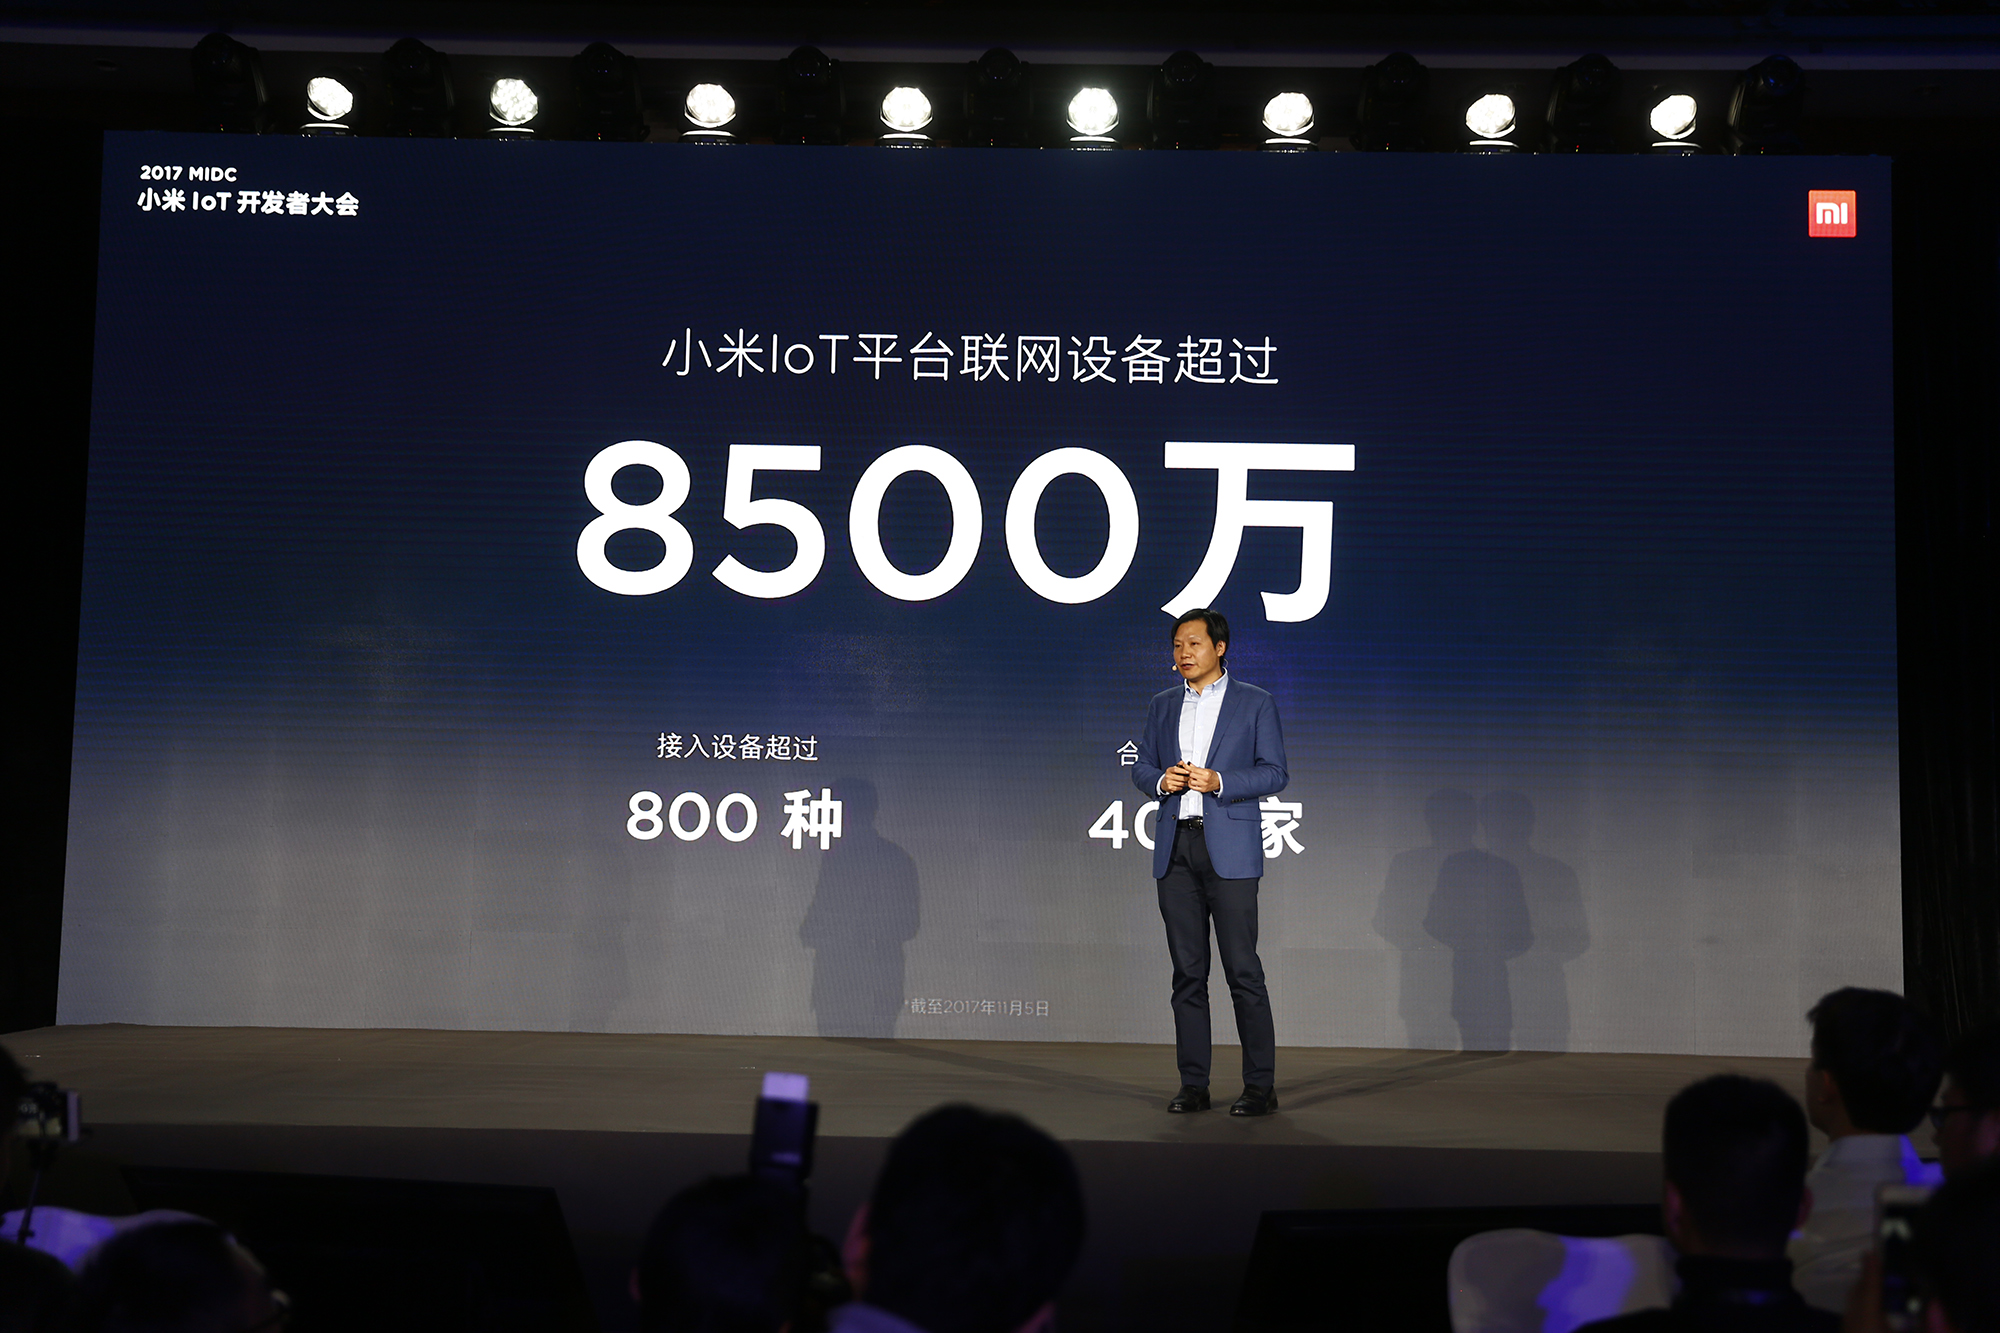 雷军宣布小米已成全球最大智能硬件IoT平台 将全面开放